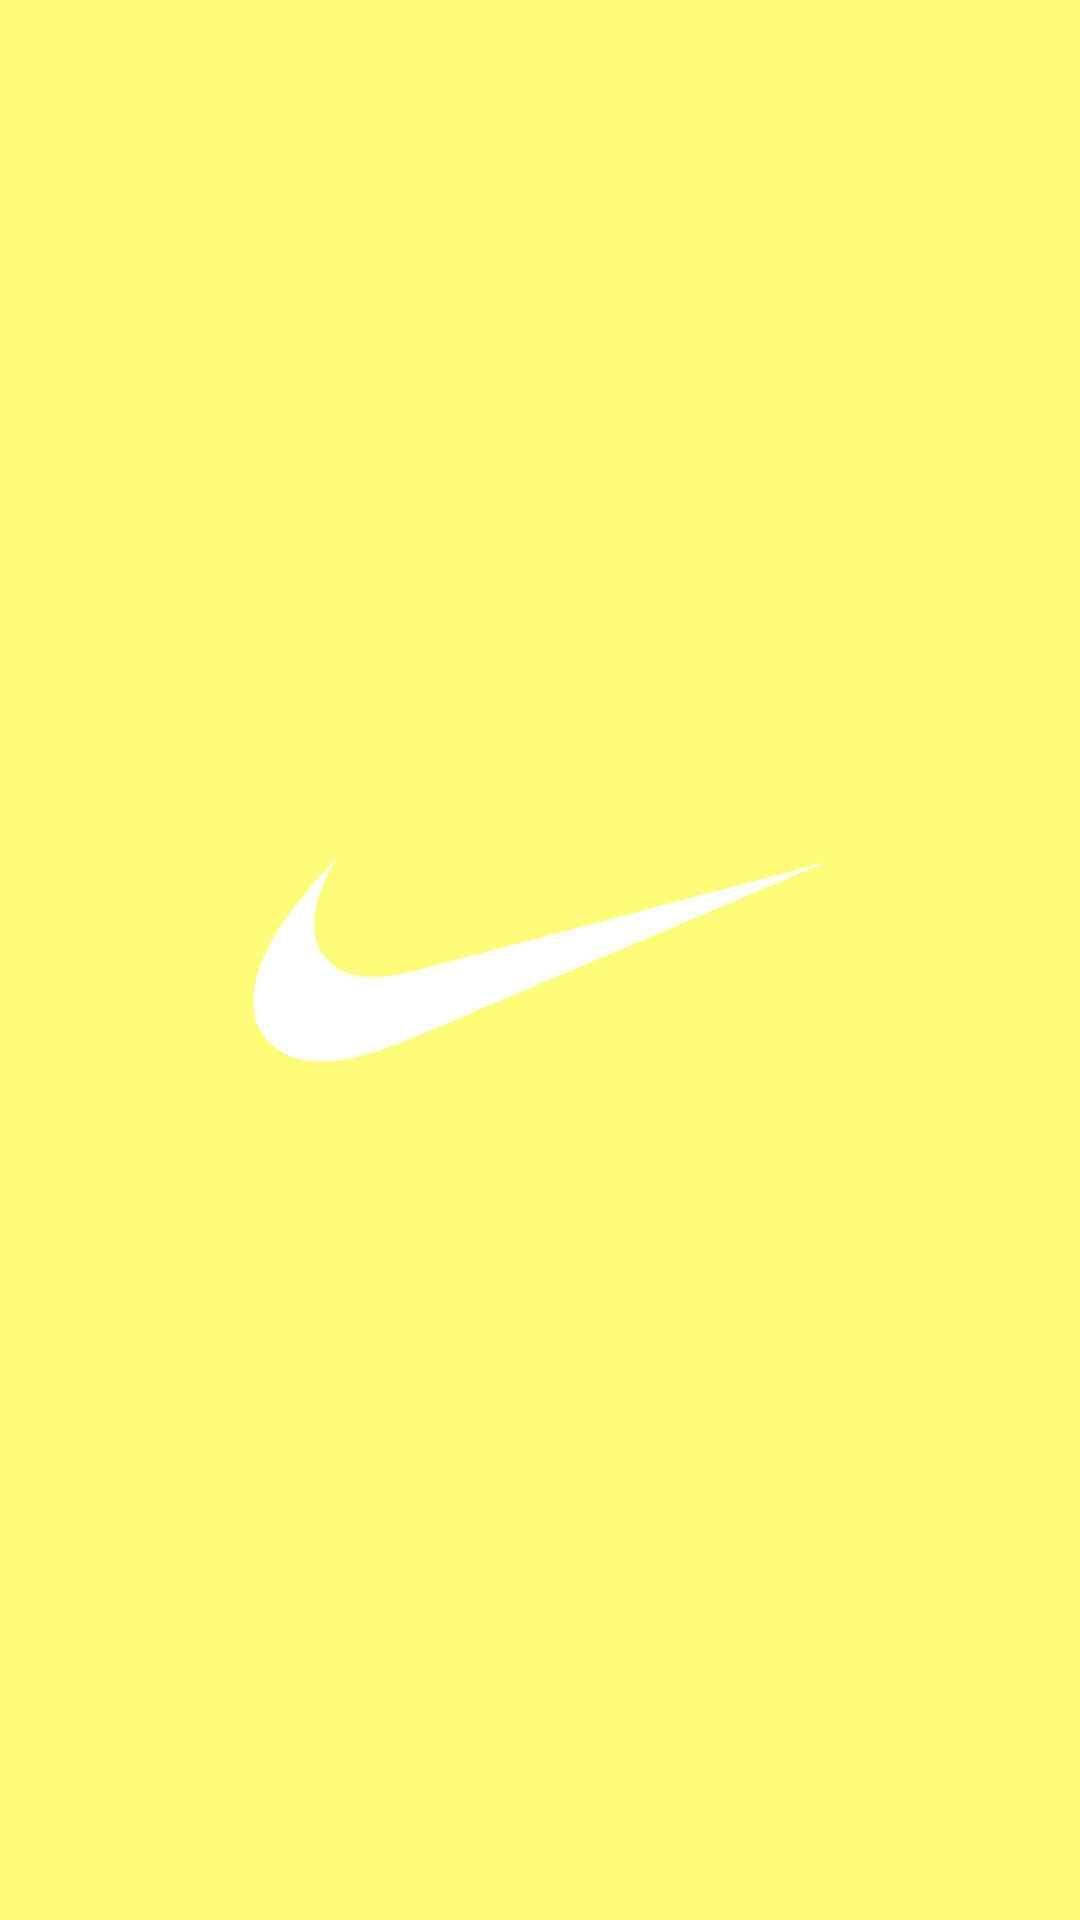 Mesmerizing Splash Of Cute Pastel Yellow Aesthetic With Iconic Nike Logo Background